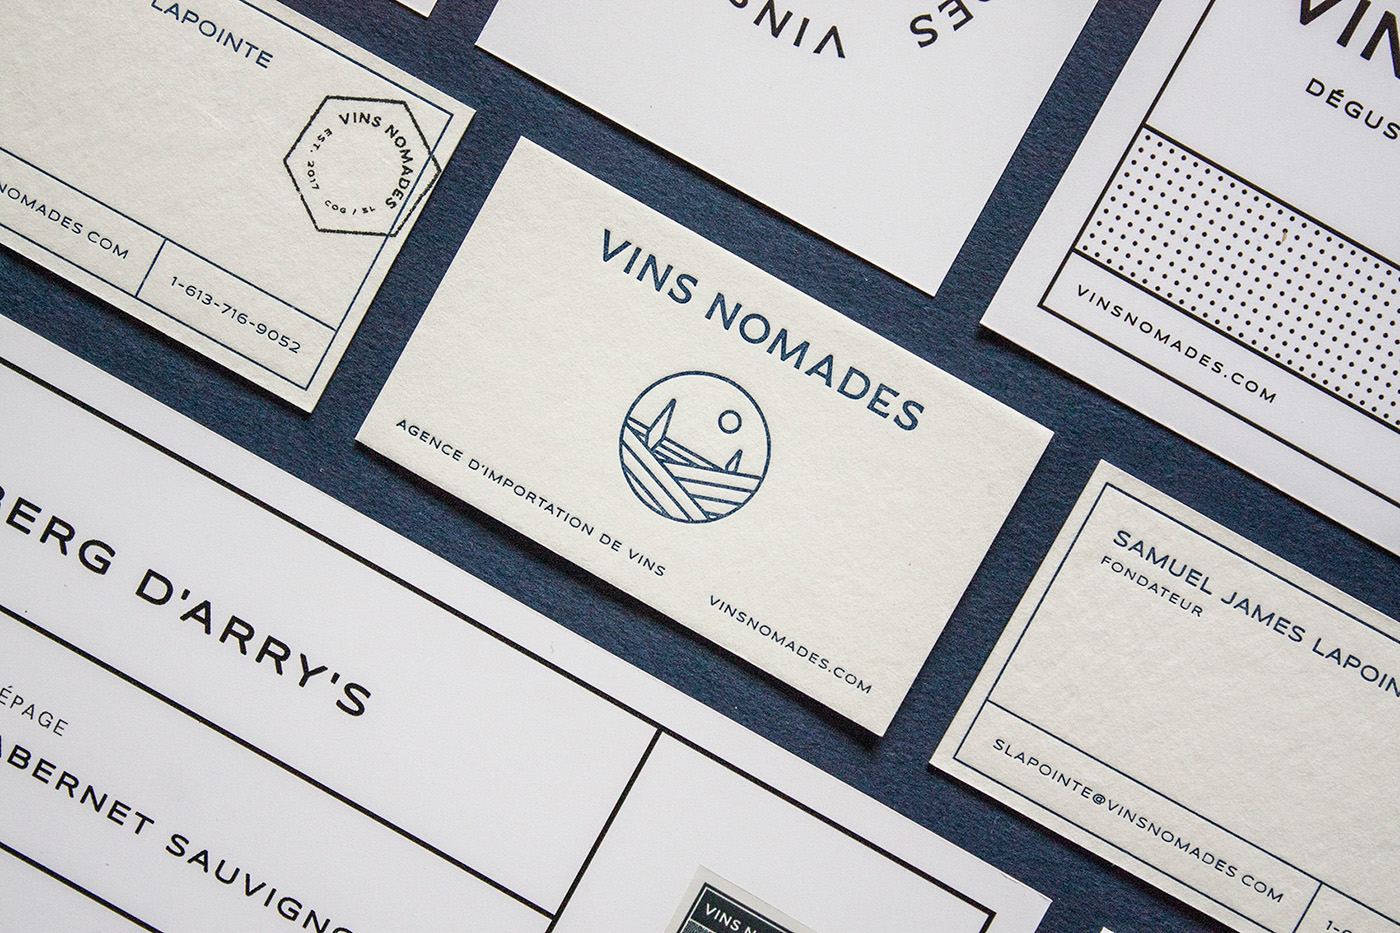 wine import agency wine vins nomades business card logo Brand Design stamp brand craft